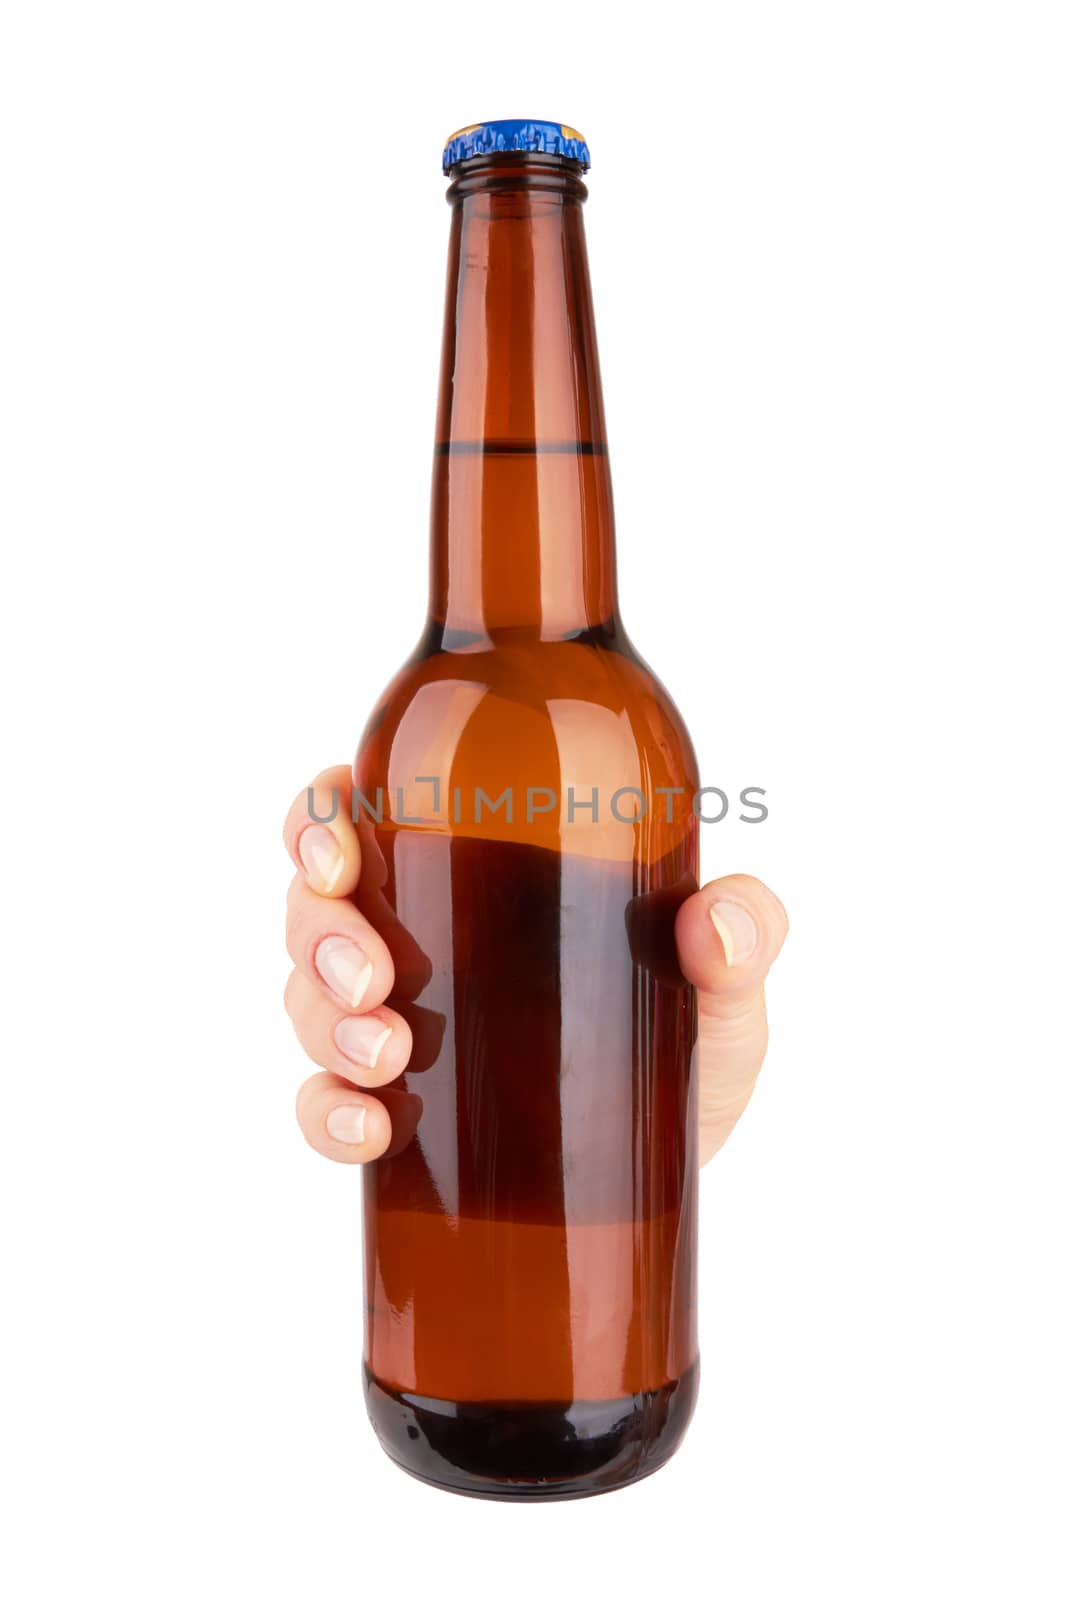 beer bottle by pioneer111